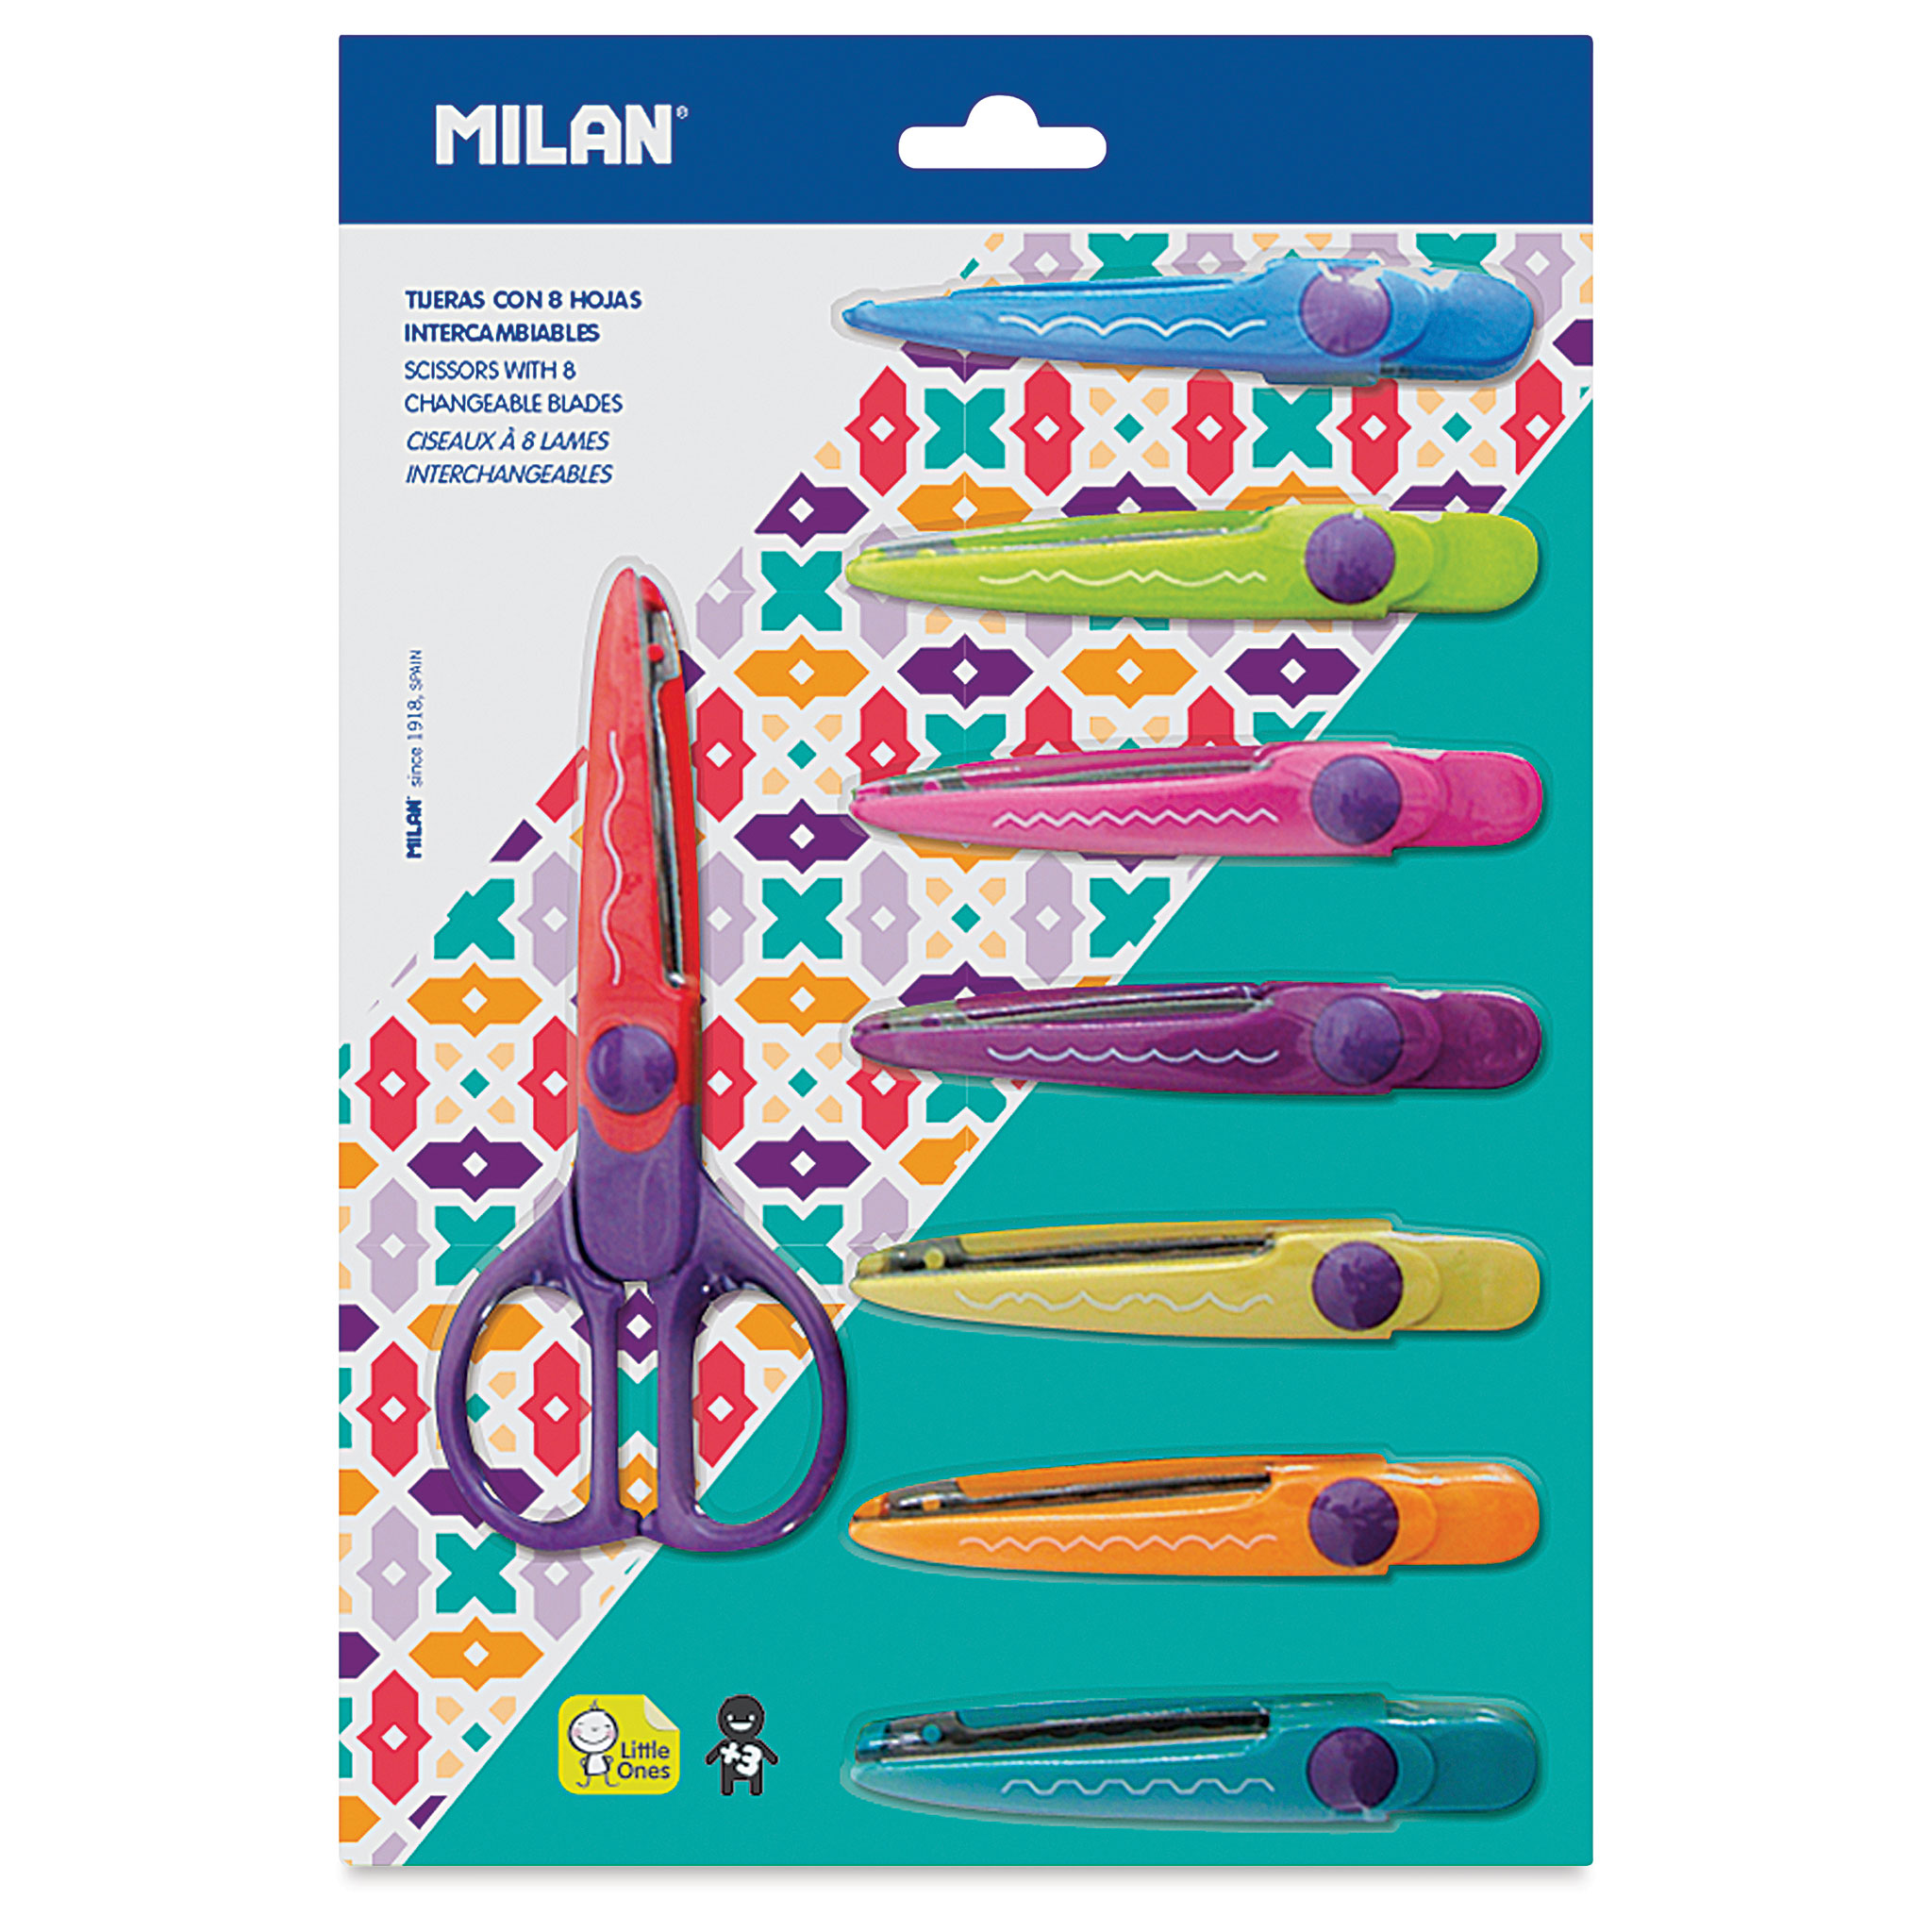 Milan Zig-Zag Scissors with 8 Interchangeable Blades